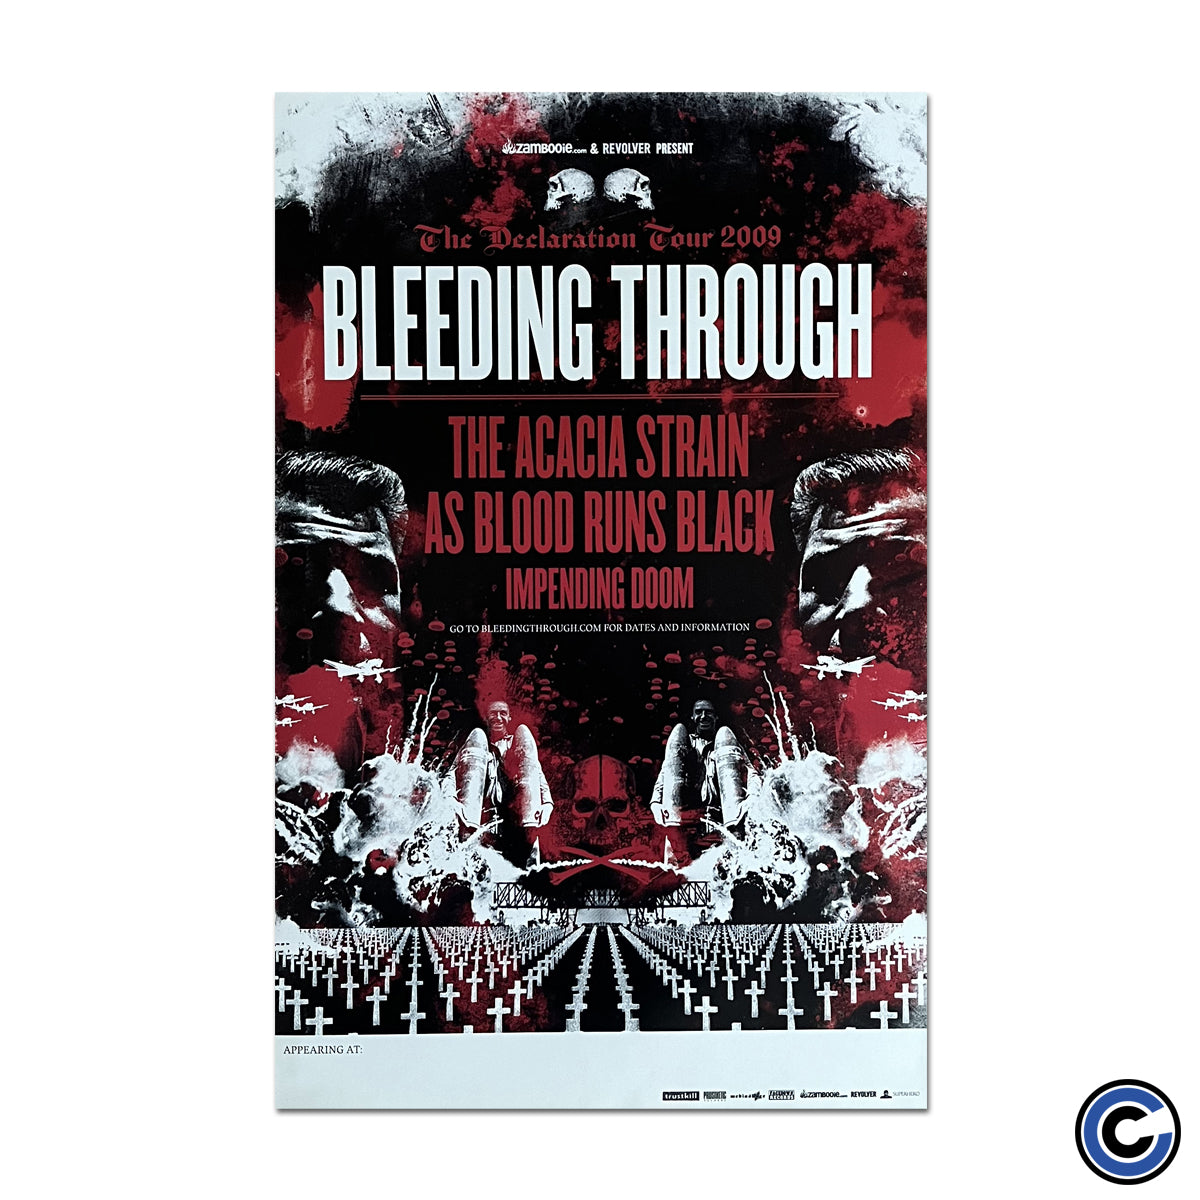 Bleeding Through "Tour 2009" Poster